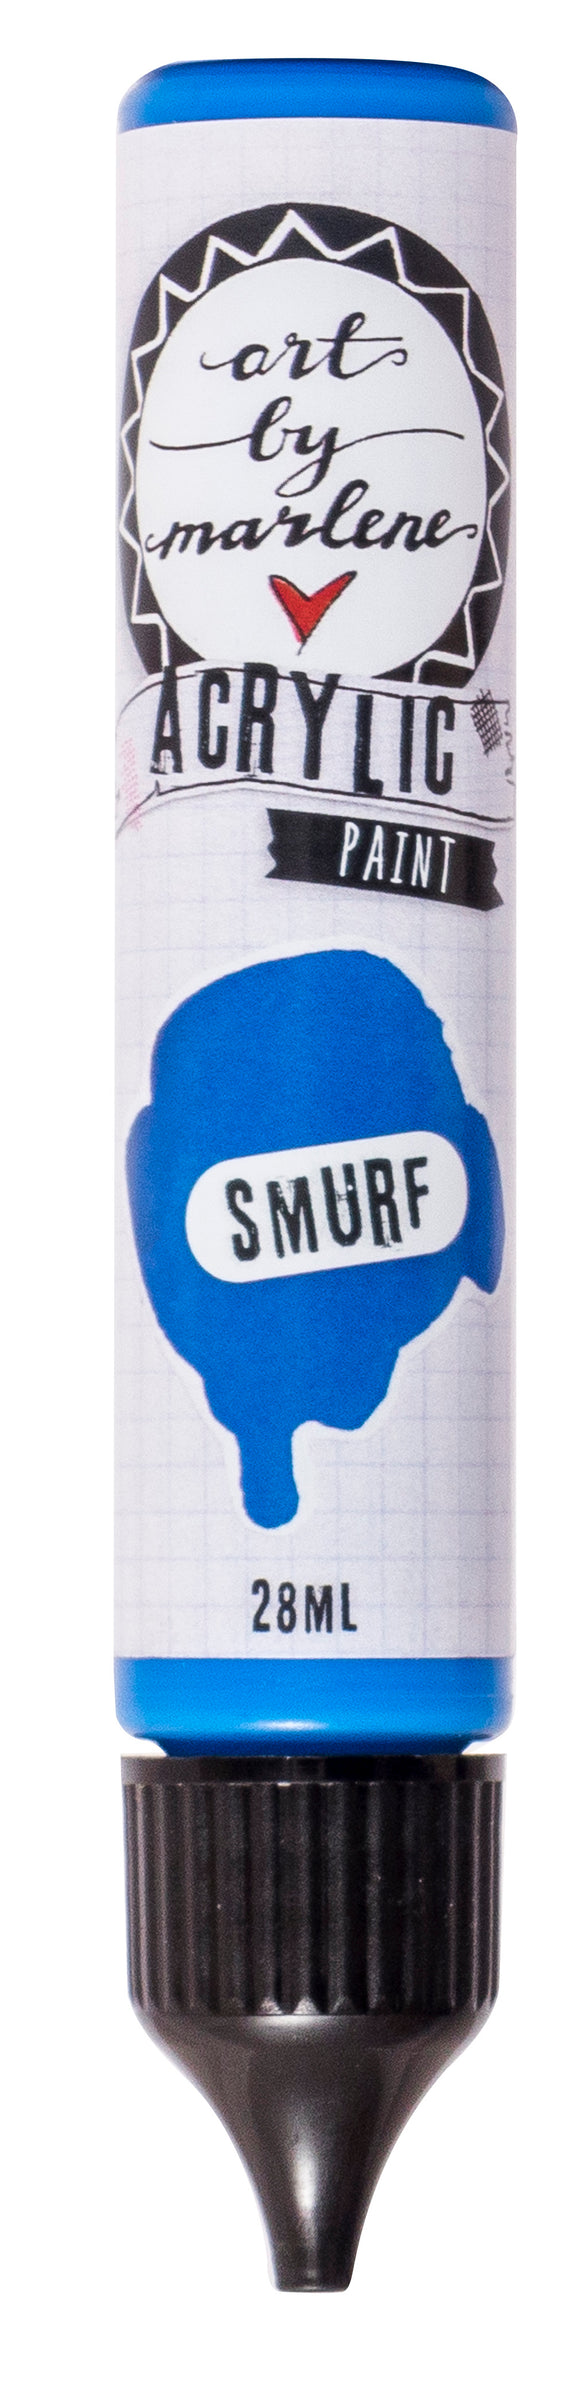 Acrylic Paint - Smurf : (ABM) ACP10